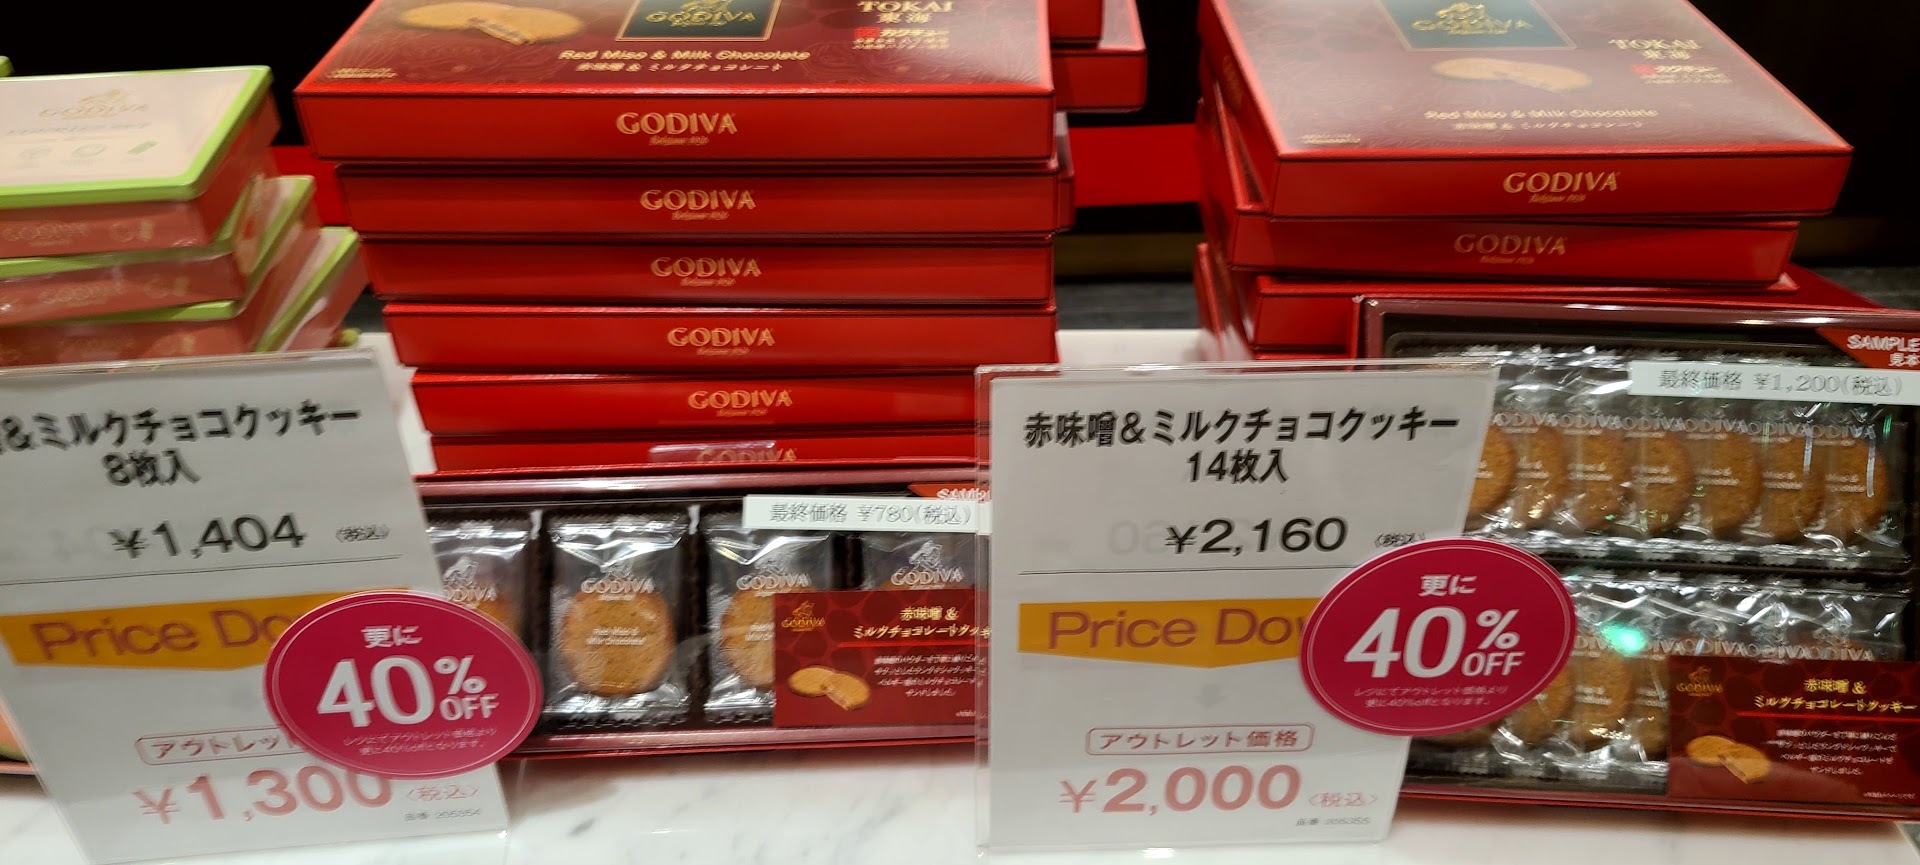 ゴディバ御殿場プレミアムアウトレット激安品 (20)1200円のクッキーセット